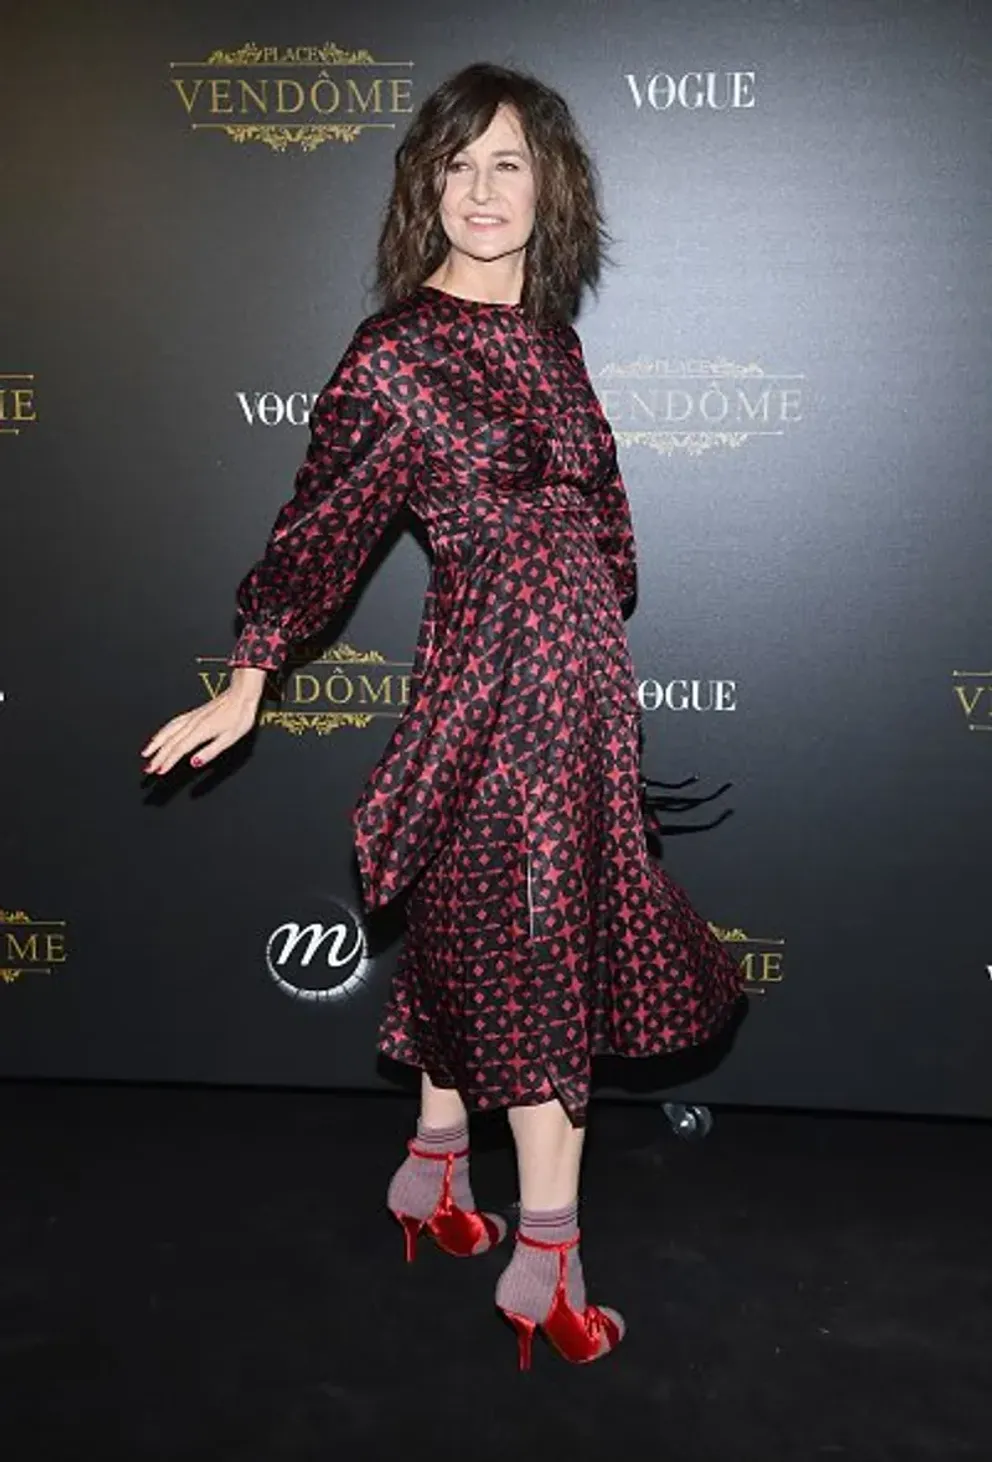 Valérie Lemercier assiste à l'exposition Irving Penn Private Viewing organisée par Vogue dans le cadre de la Semaine de la mode féminine printemps/été 2018 à Paris, le 1er octobre 2017 à Paris, France. | Photo : Getty Images